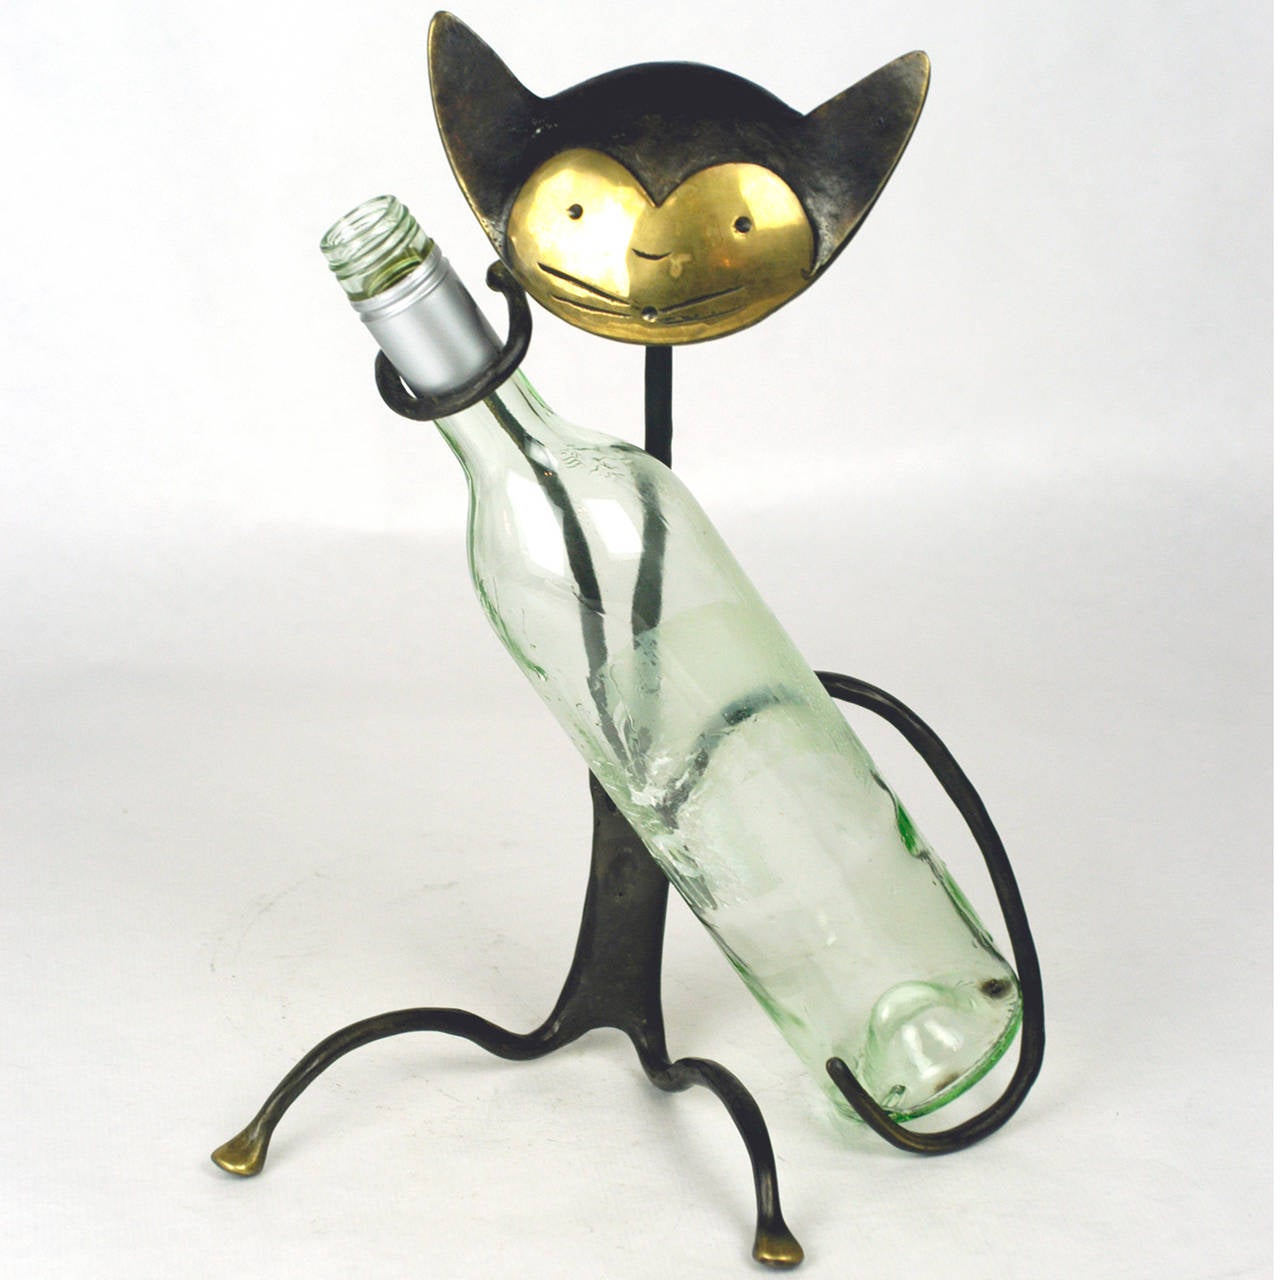 Big ikonischer österreichischer Katzenflaschenhalter aus Messing aus den 1950er Jahren.